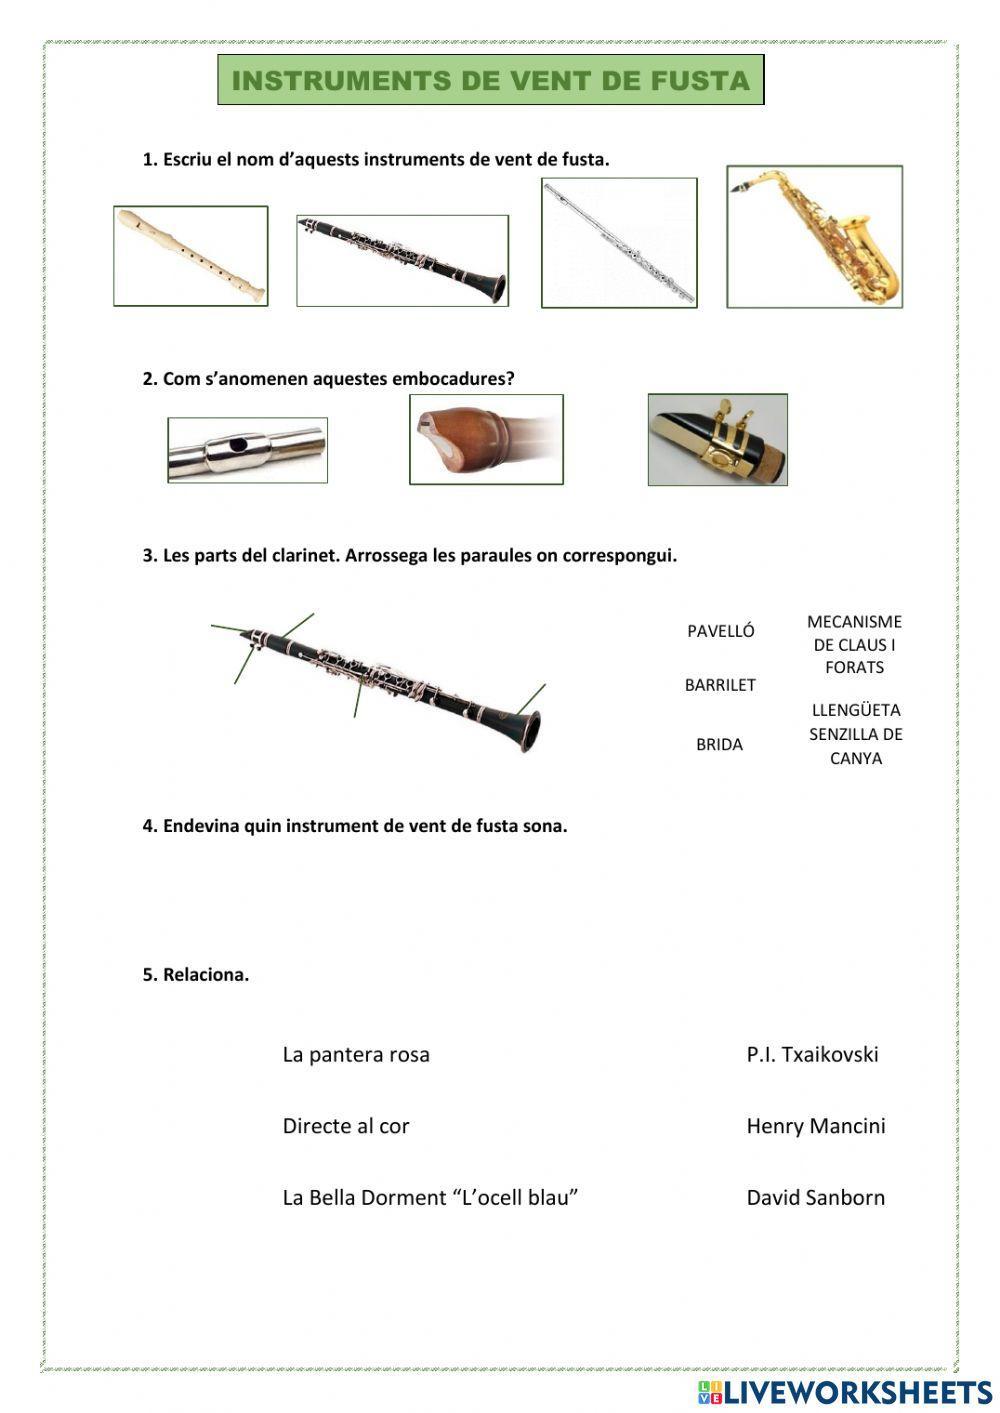 Instruments de vent fusta